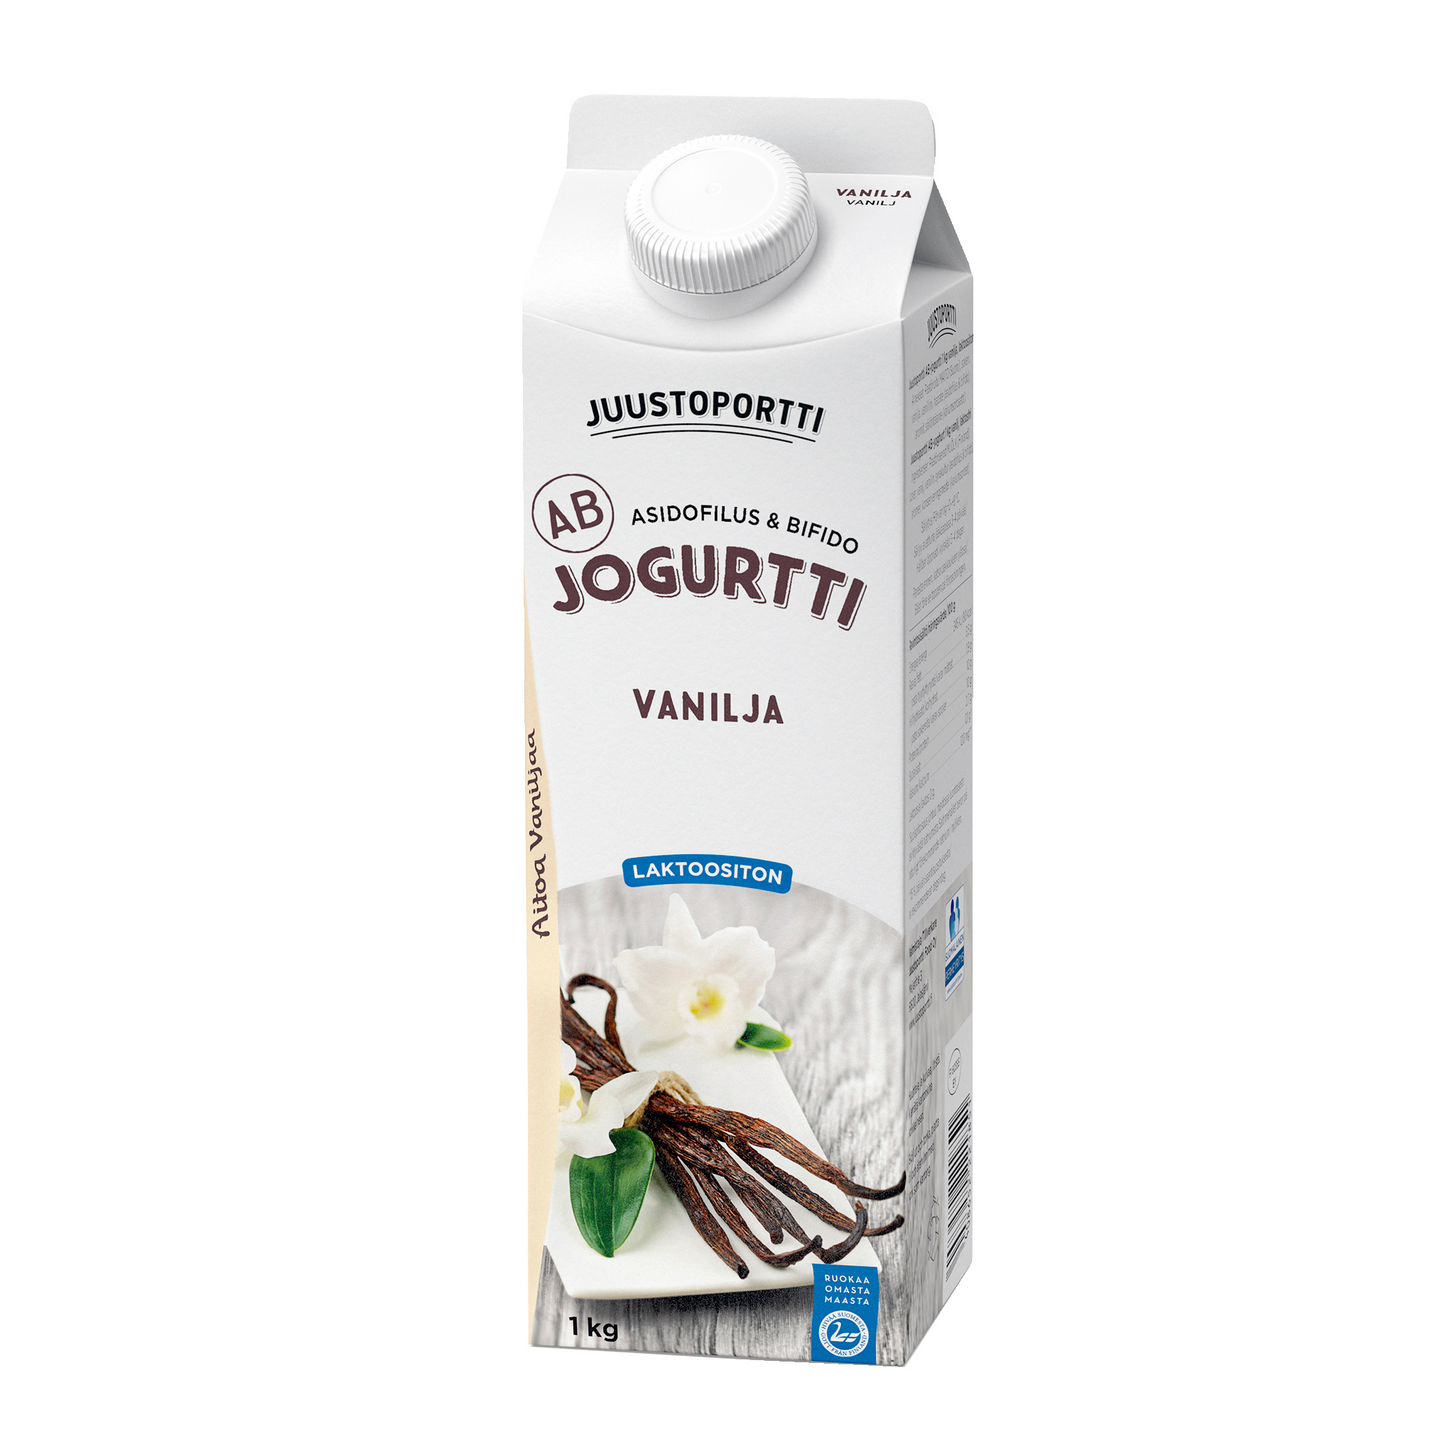 Juustoportti laktoositon AB-jogurtti vanilja 1kg